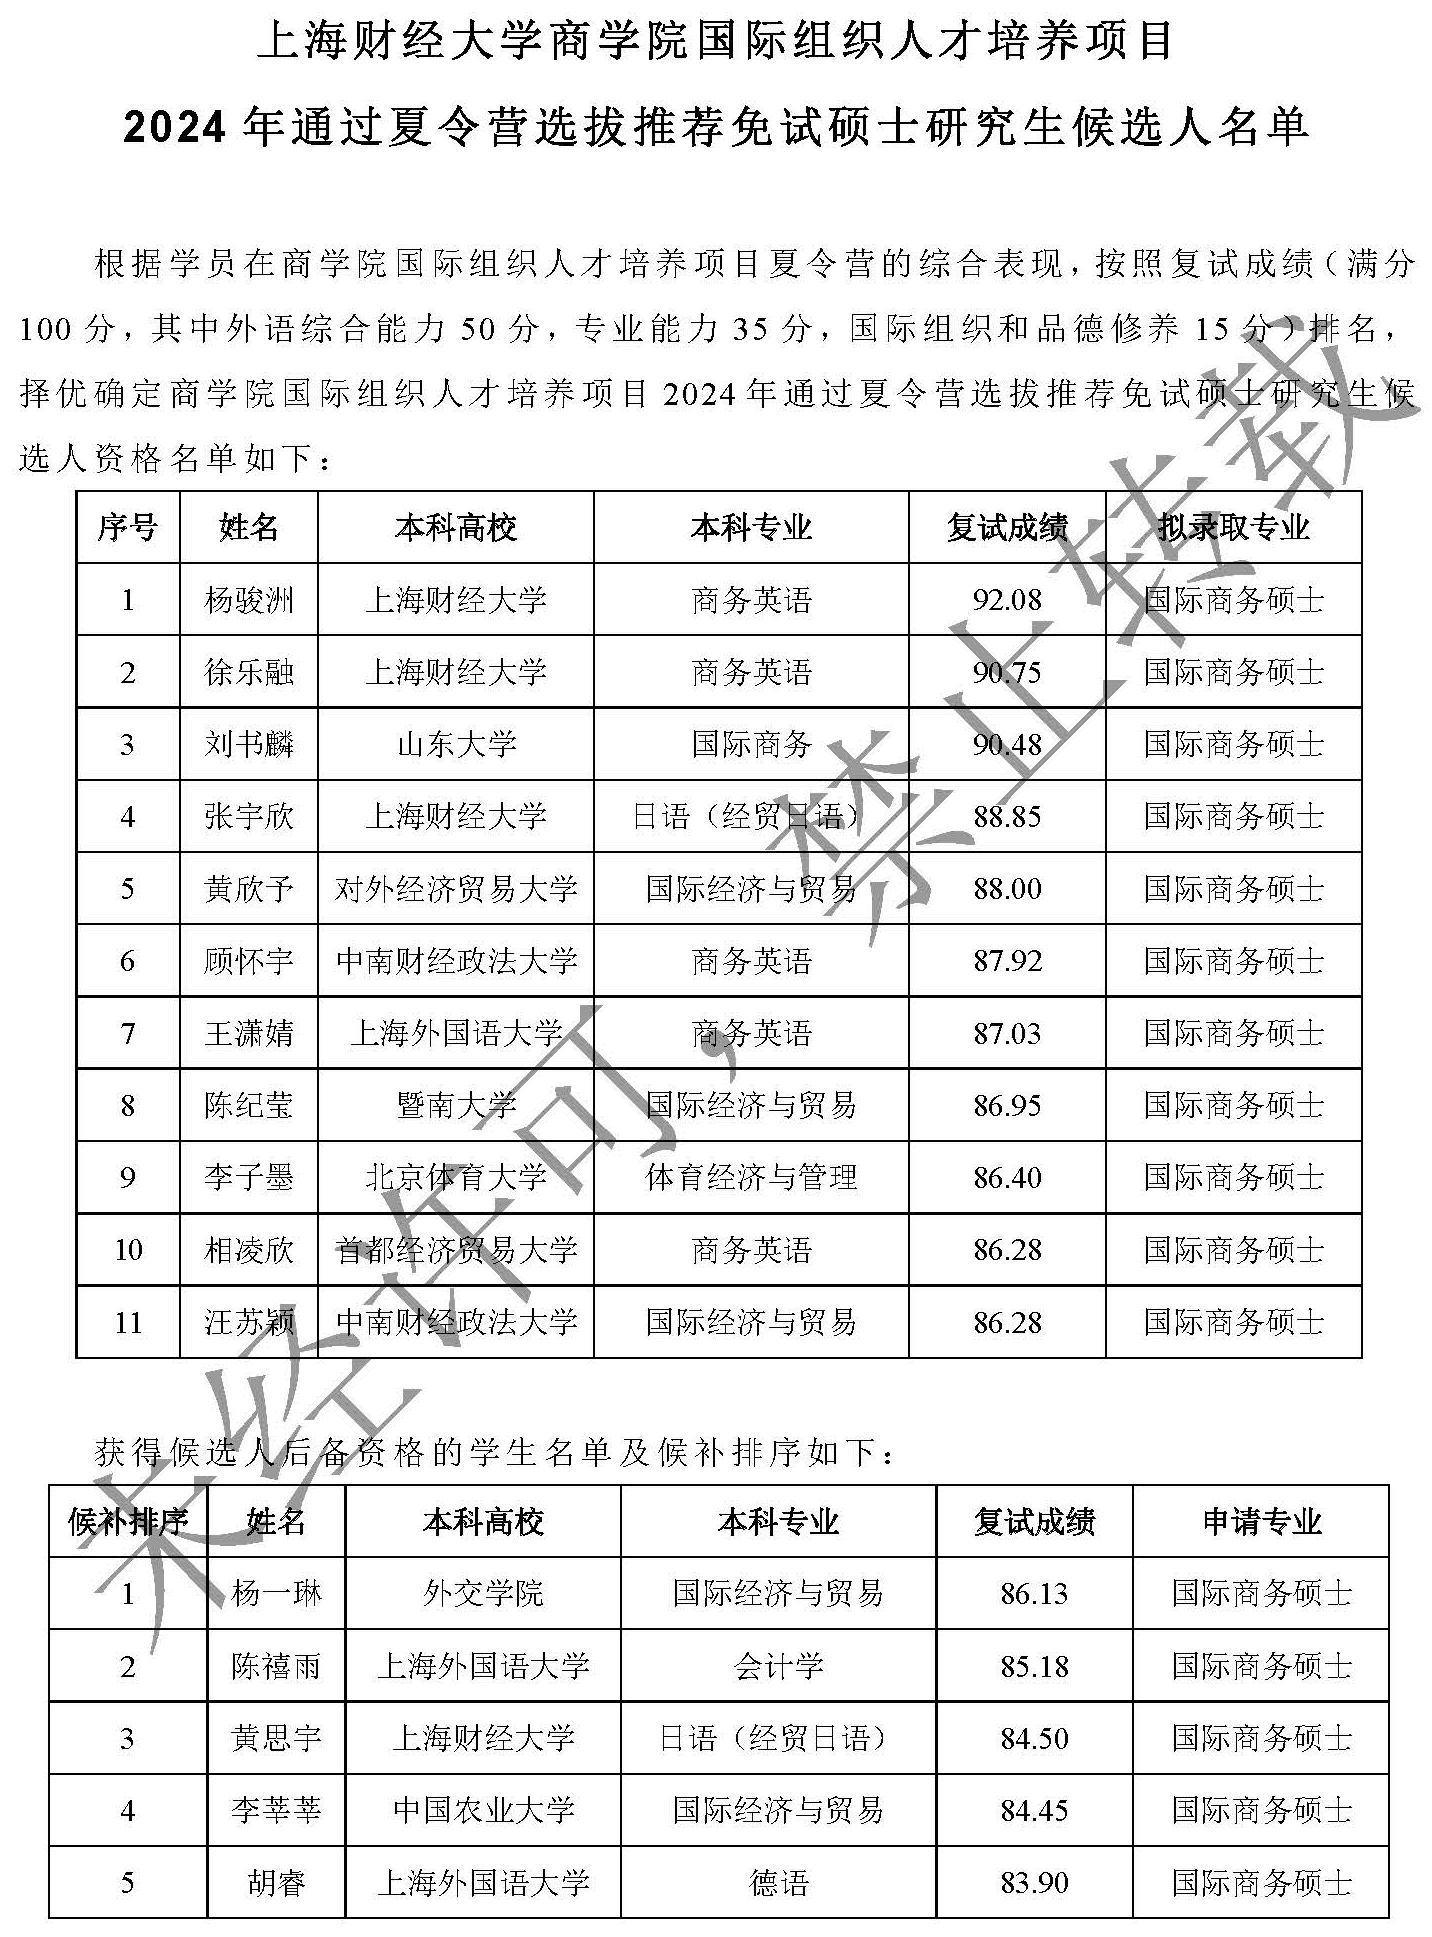 上海财经大学商学院国际组织人才培养项目2024年通过夏令营选拔外校推荐免试硕士研究生候选人名单（定）_页面_1.jpg